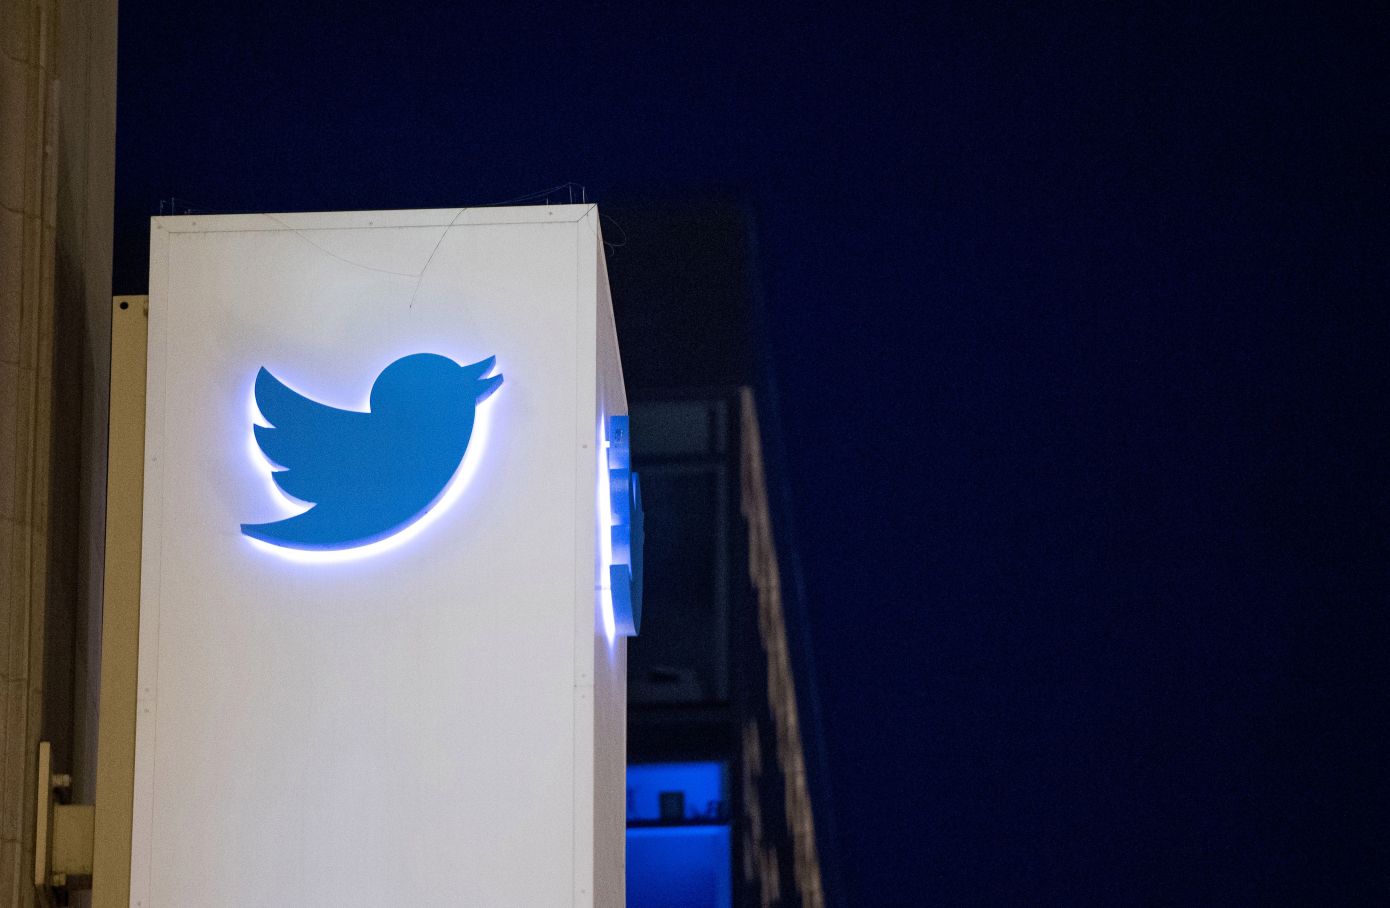 Баг мобильного ПО позволил связать с эккаунтами Twitter 17 млн номеров телефонов